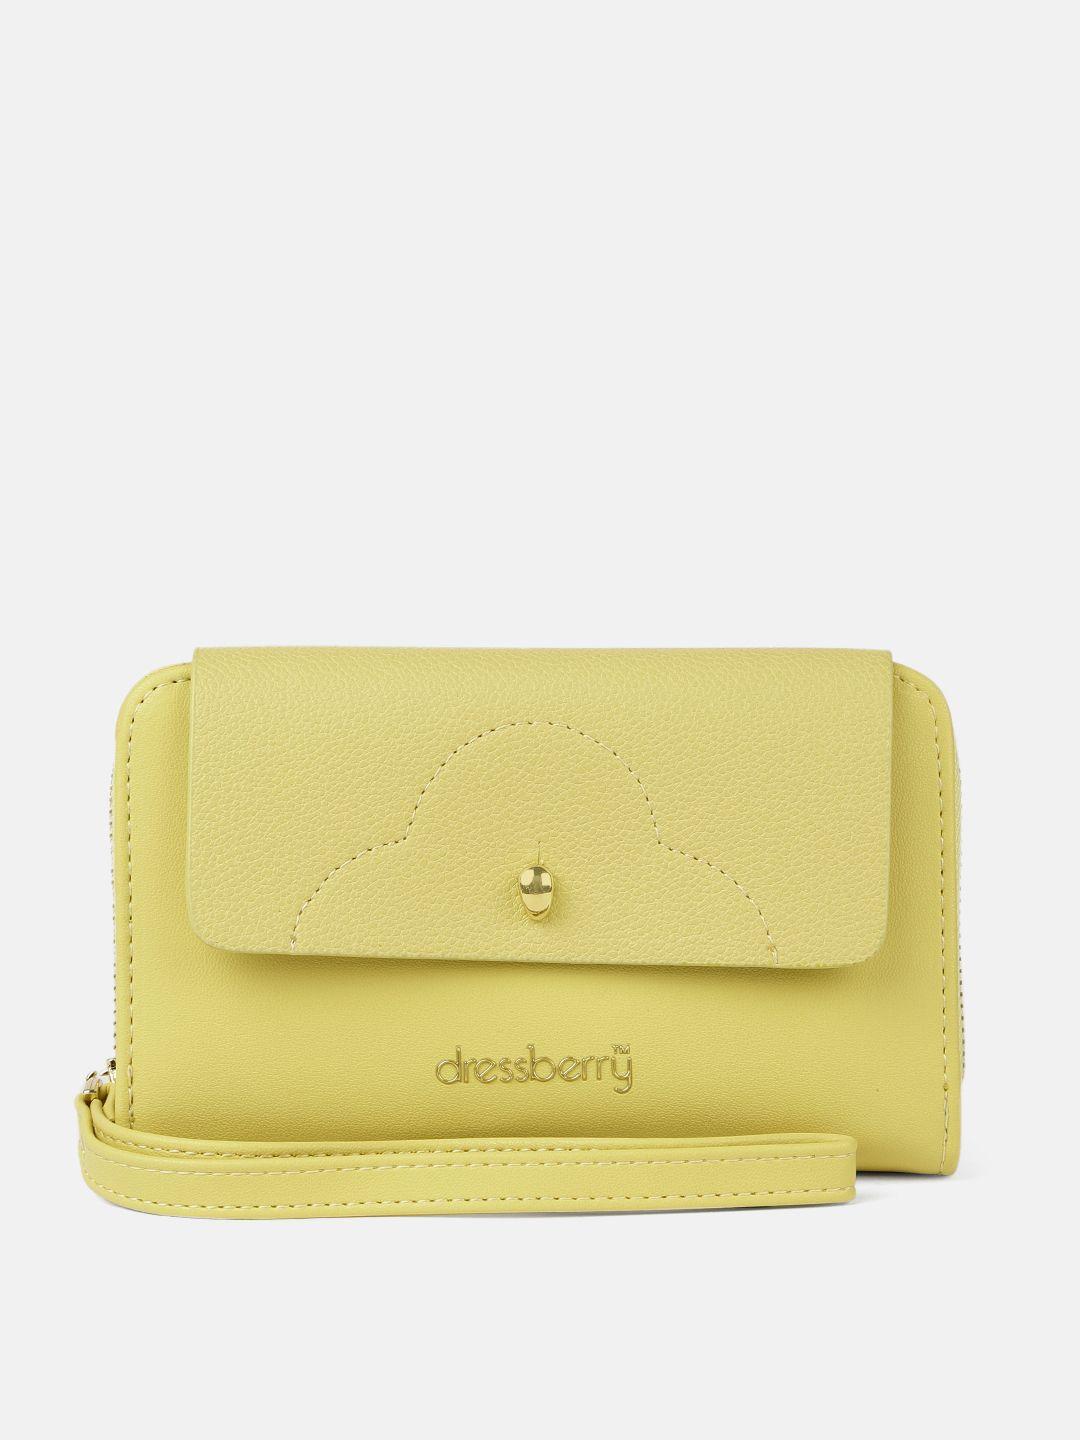 dressberry-women-yellow-solid-zip-around-wallet